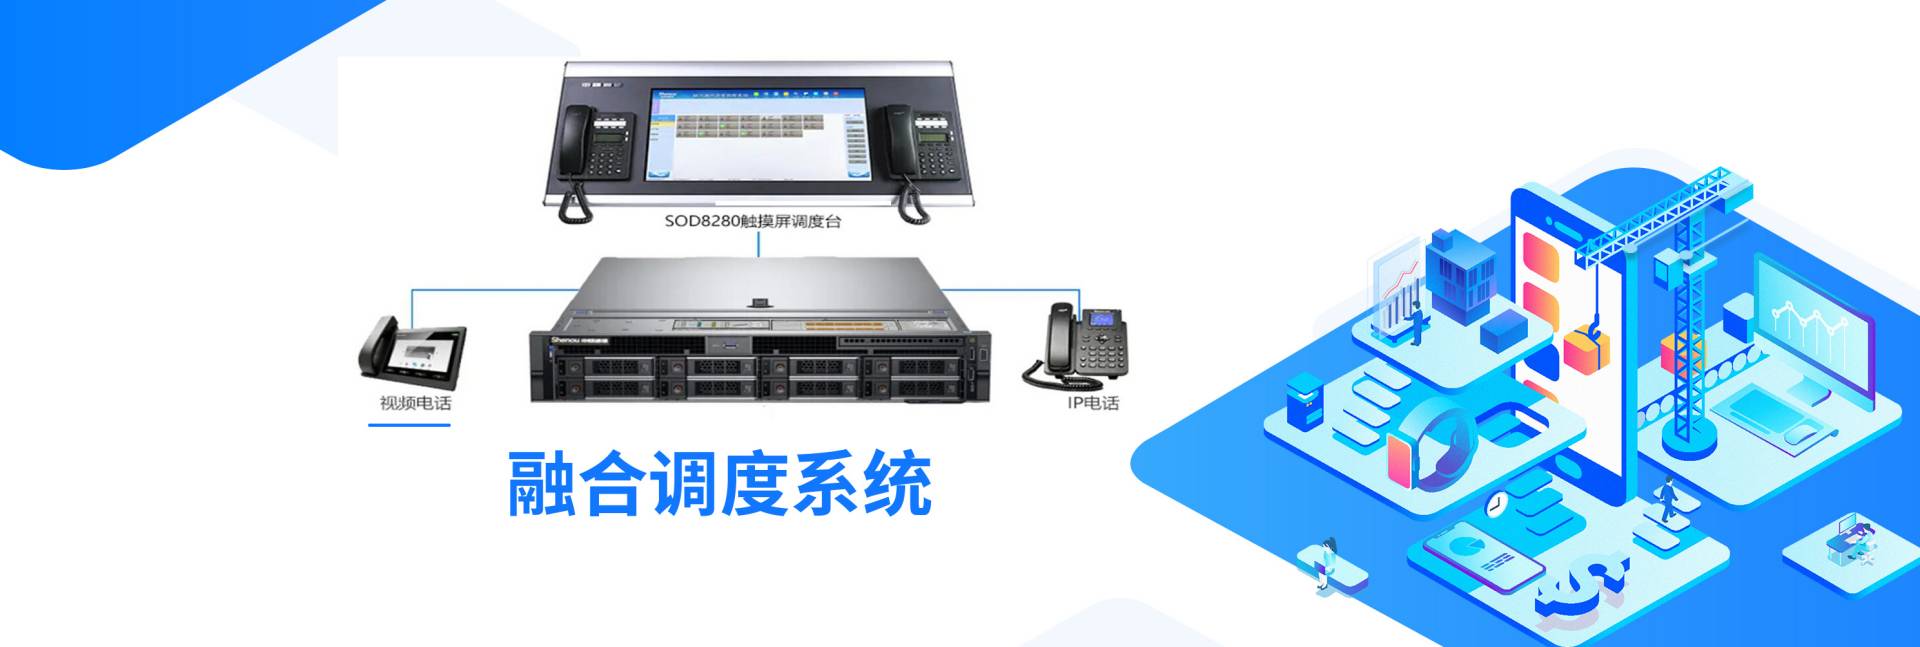 SOC1000软交换系统组网